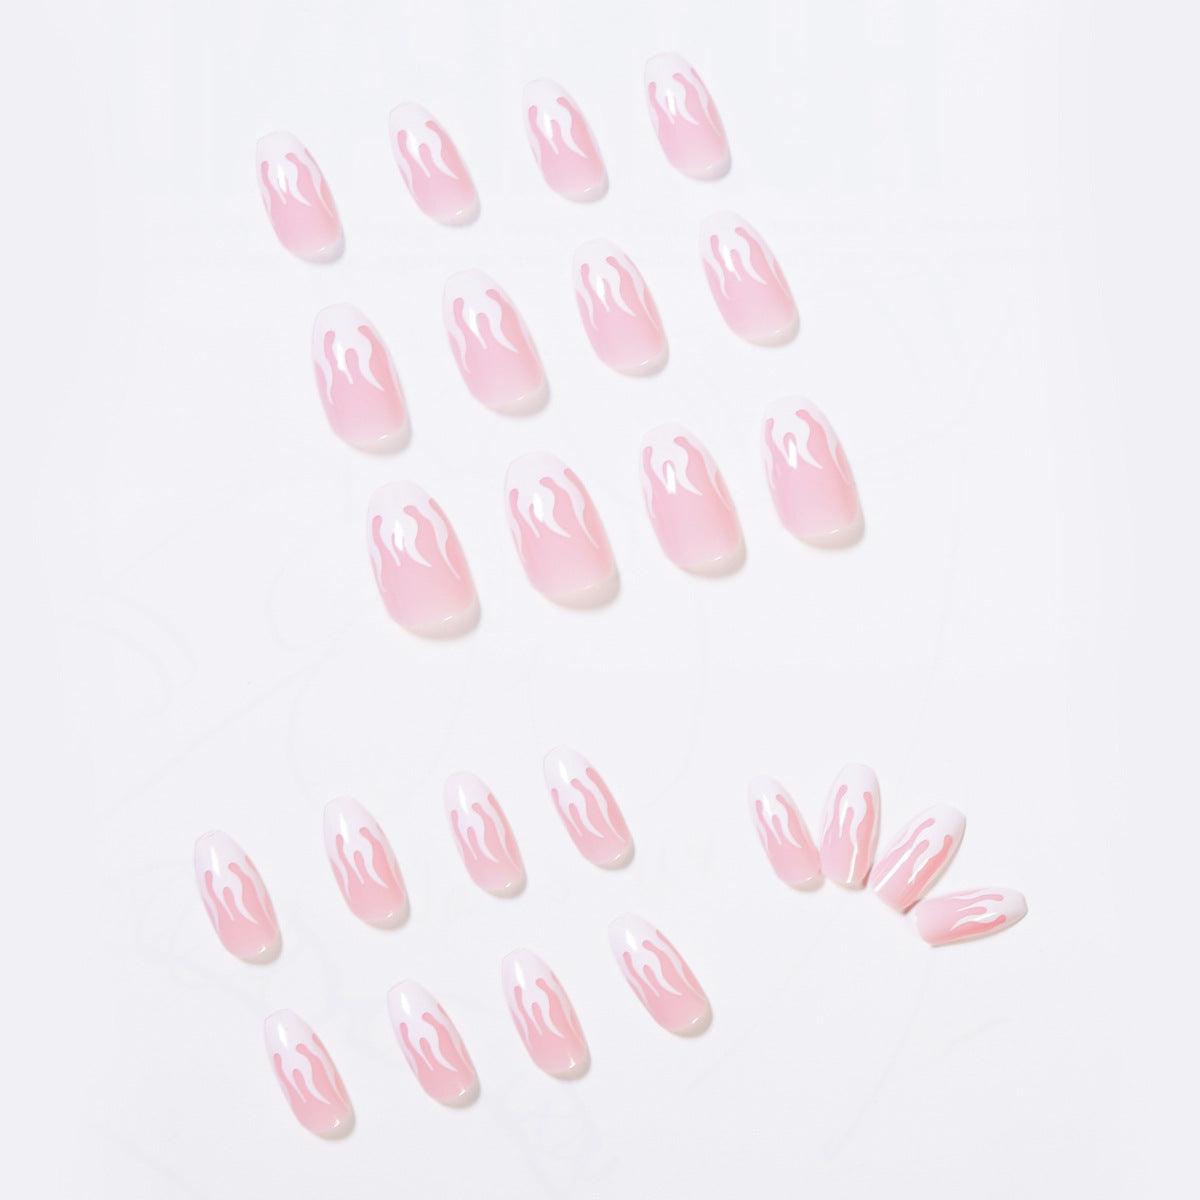 lovevop Pink Flame Short Ballet Press On Nails